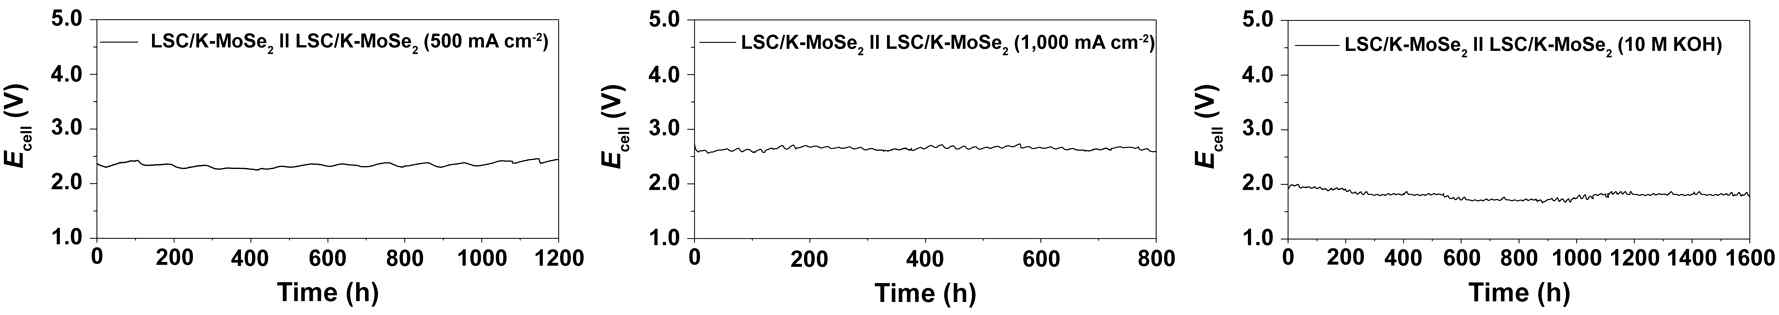 LSC/K-MoSe2 촉매의 고전류밀도 (500, 1,000 mA cm-2), 고전해질 농도 (10 M KOH)에서의 구동 안정성 분석